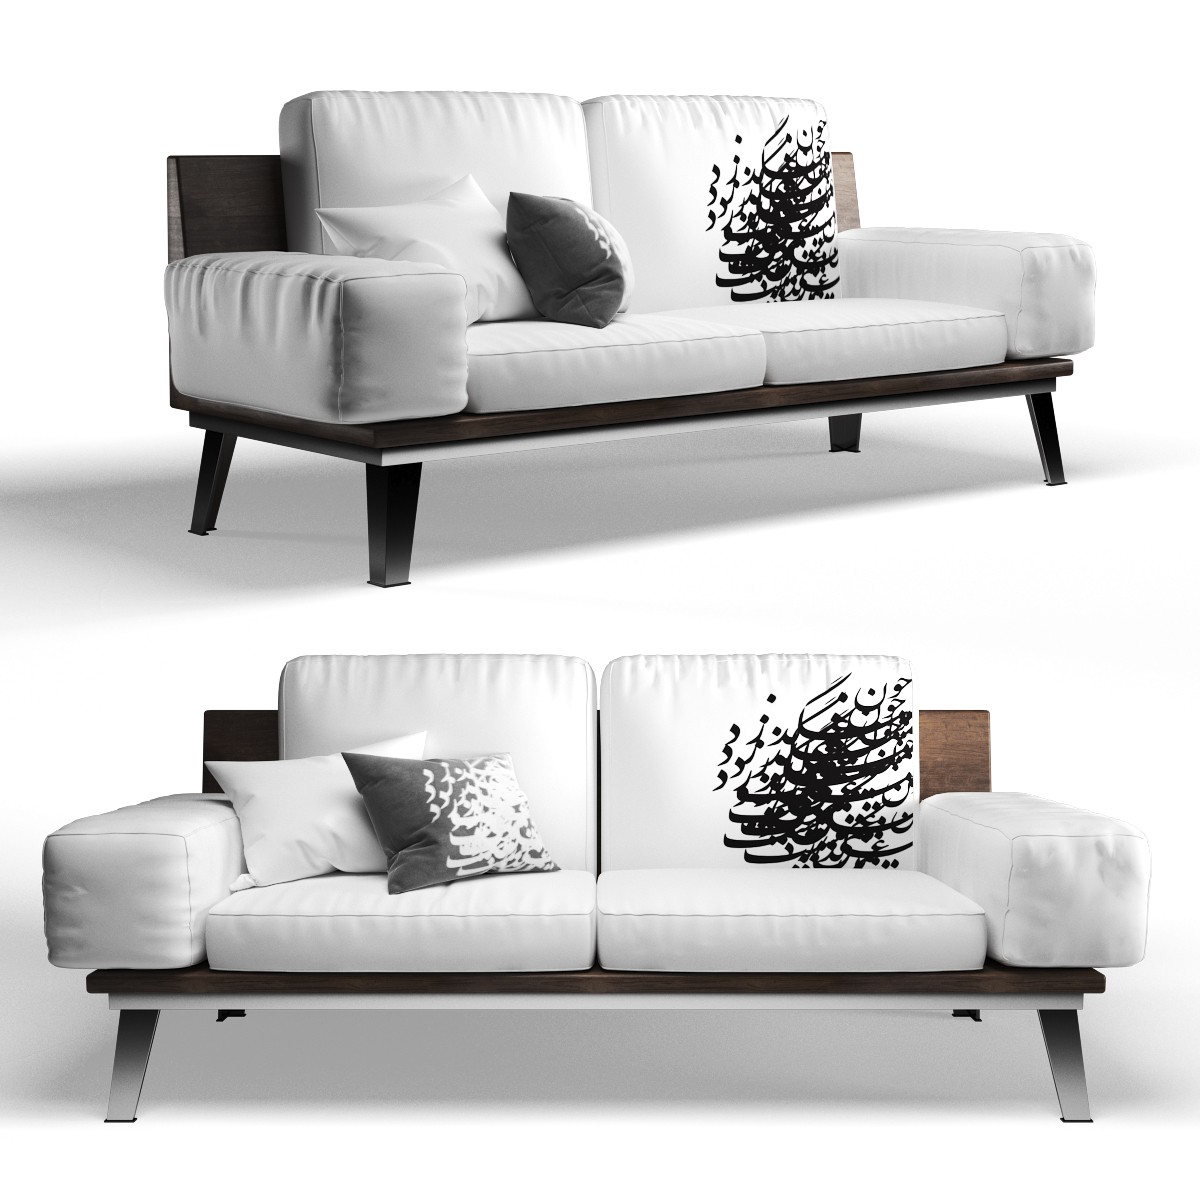 sofa 3d model